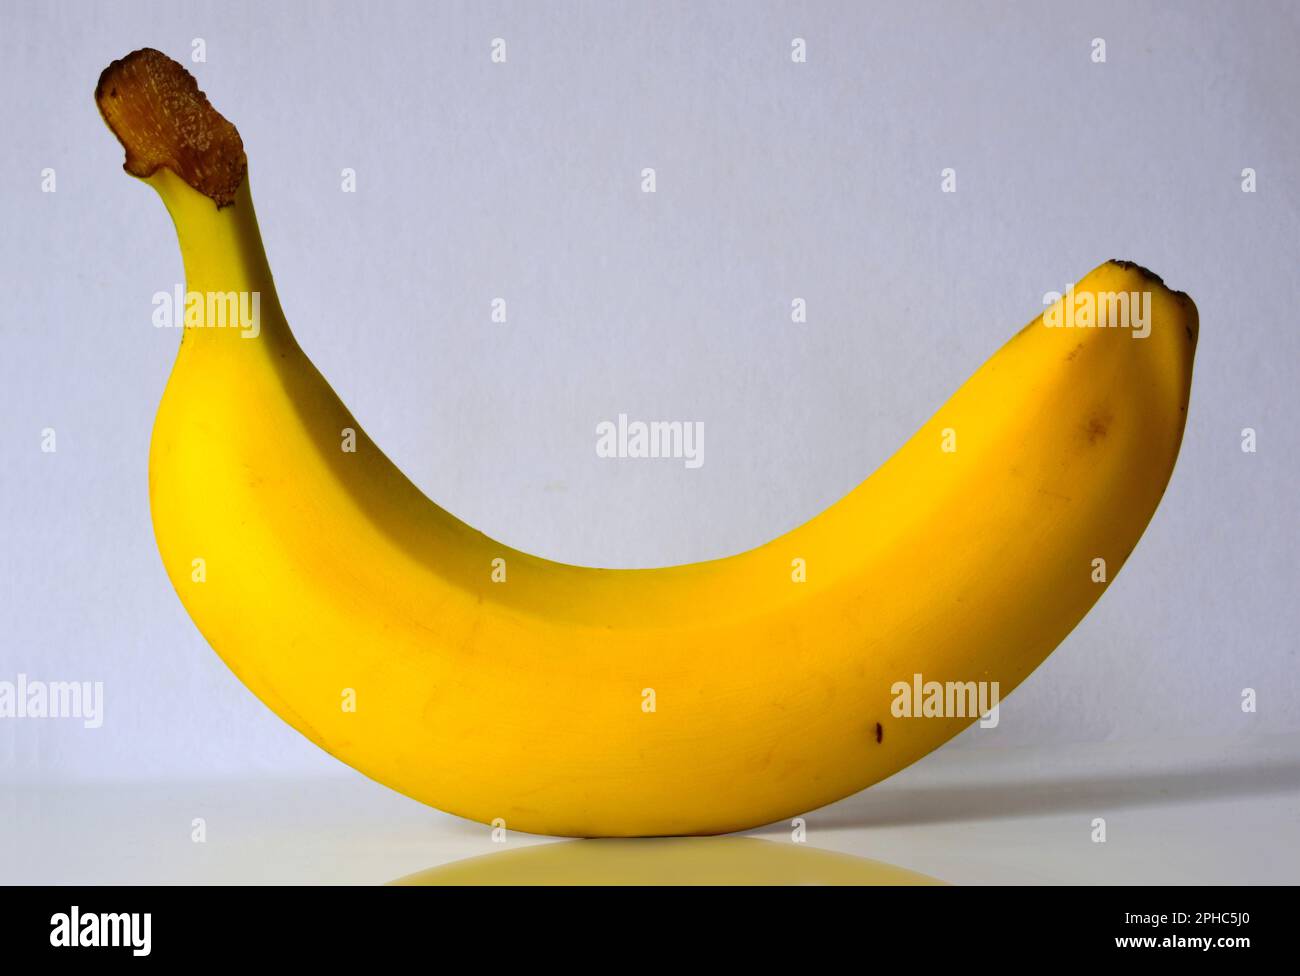 Isolierte einreife gelbe Banane auf weißer Oberfläche und weißem Hintergrund. Reflexion und Schatten. Abstraktes Bild. Stillleben und Kunst. Organisch und gesund Stockfoto